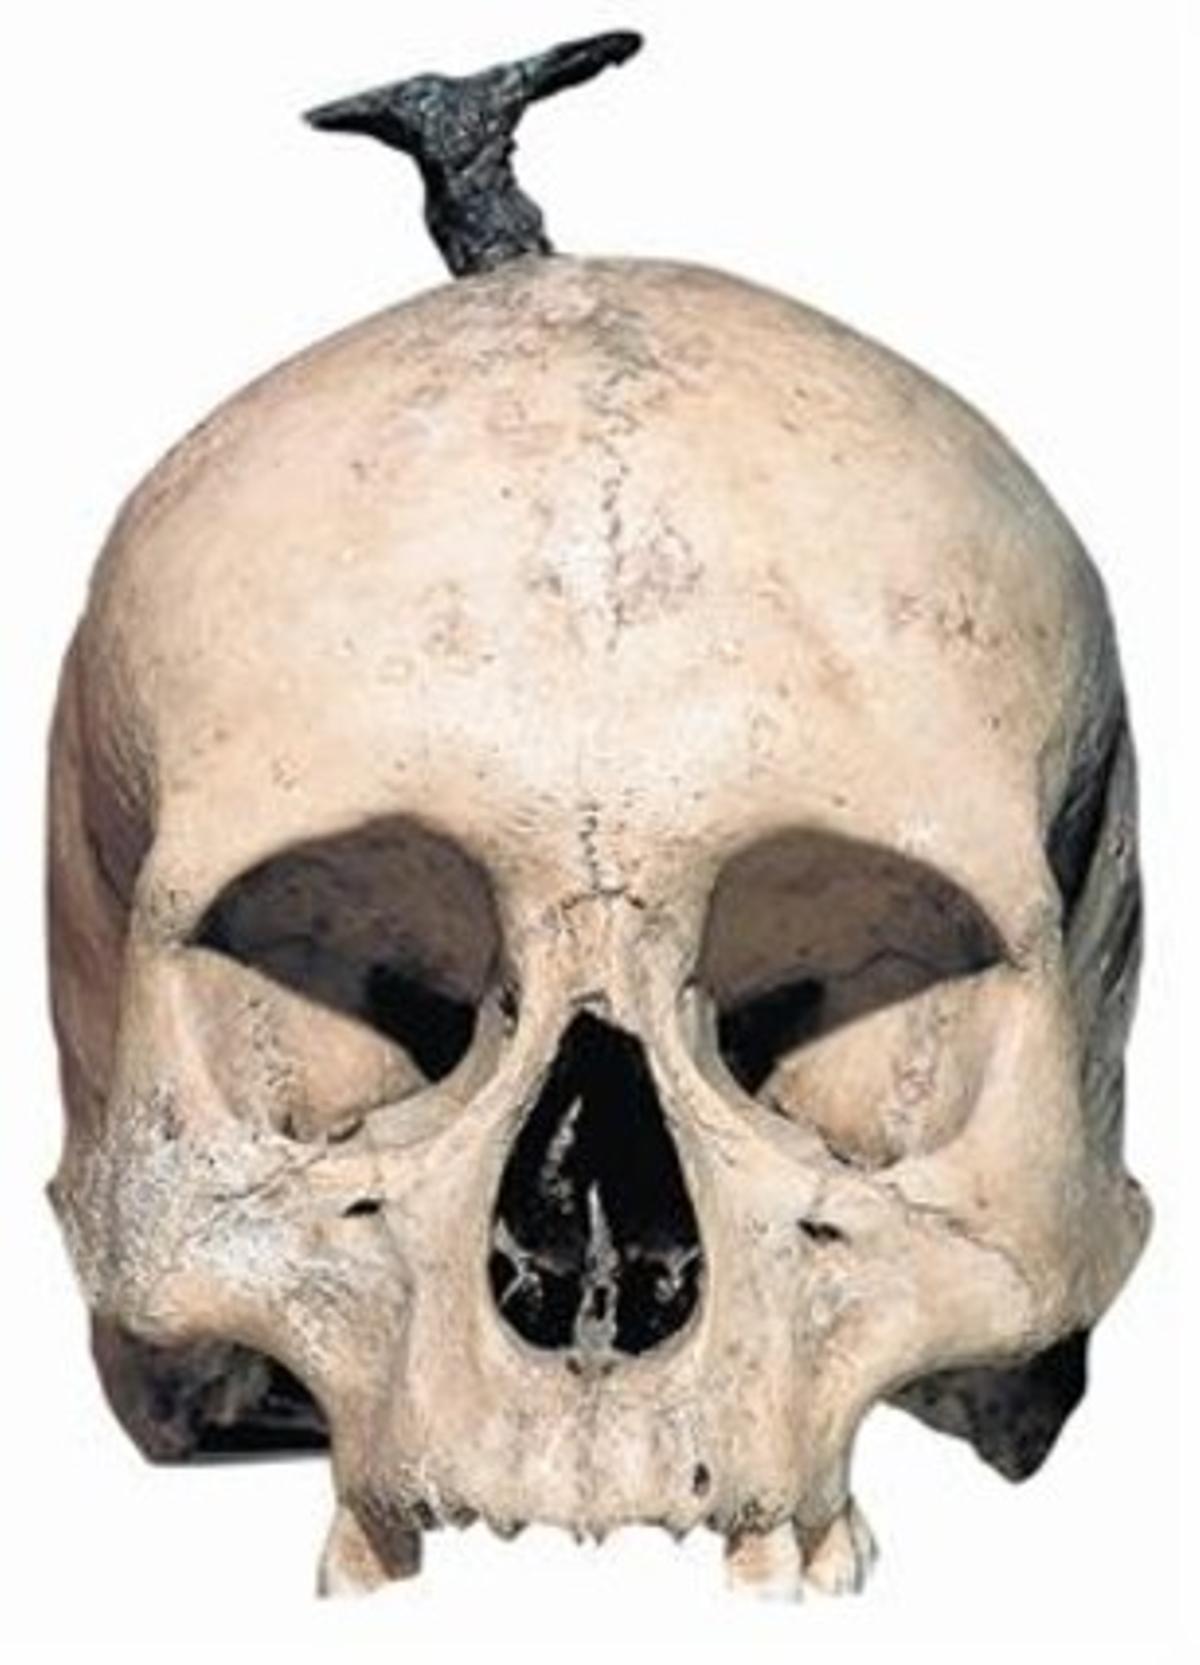 1El examen forense de los cráneos íberos hallados en Santa Coloma y Ullastret ha permitido confirmar que el clavo que atraviesa la testa era insertado después de que la cabeza hubiera sido seccionada del cuerpo.